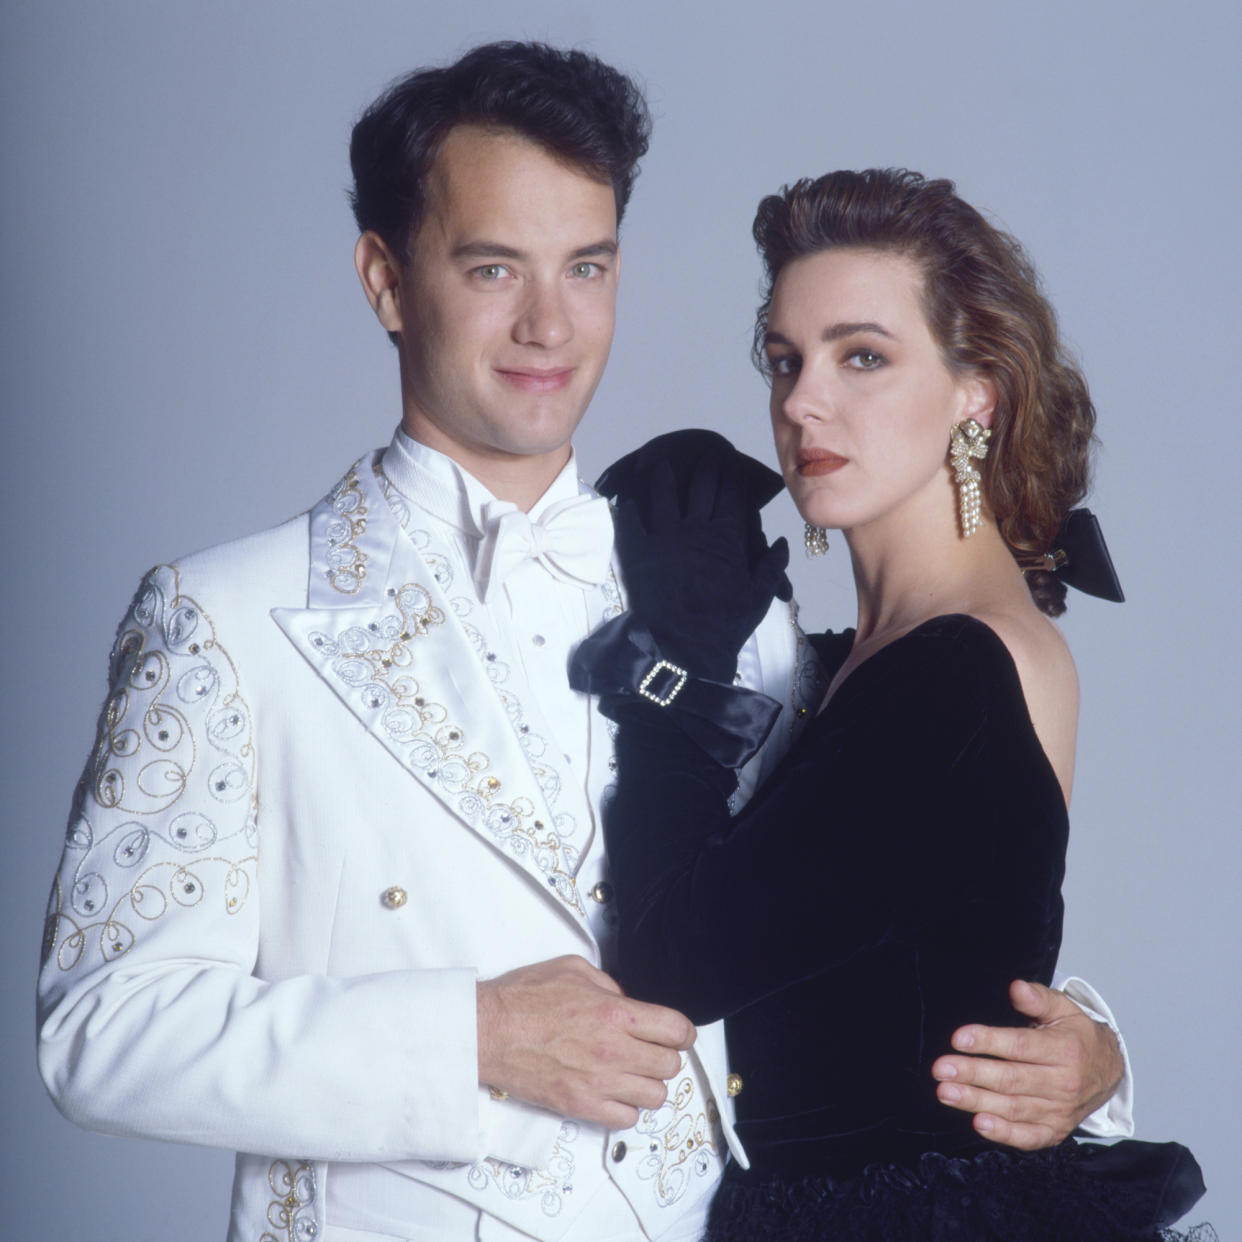 Tom Hanks and Elizabeth Perkins (Aaron Rapoport / Corbis via Getty Images)